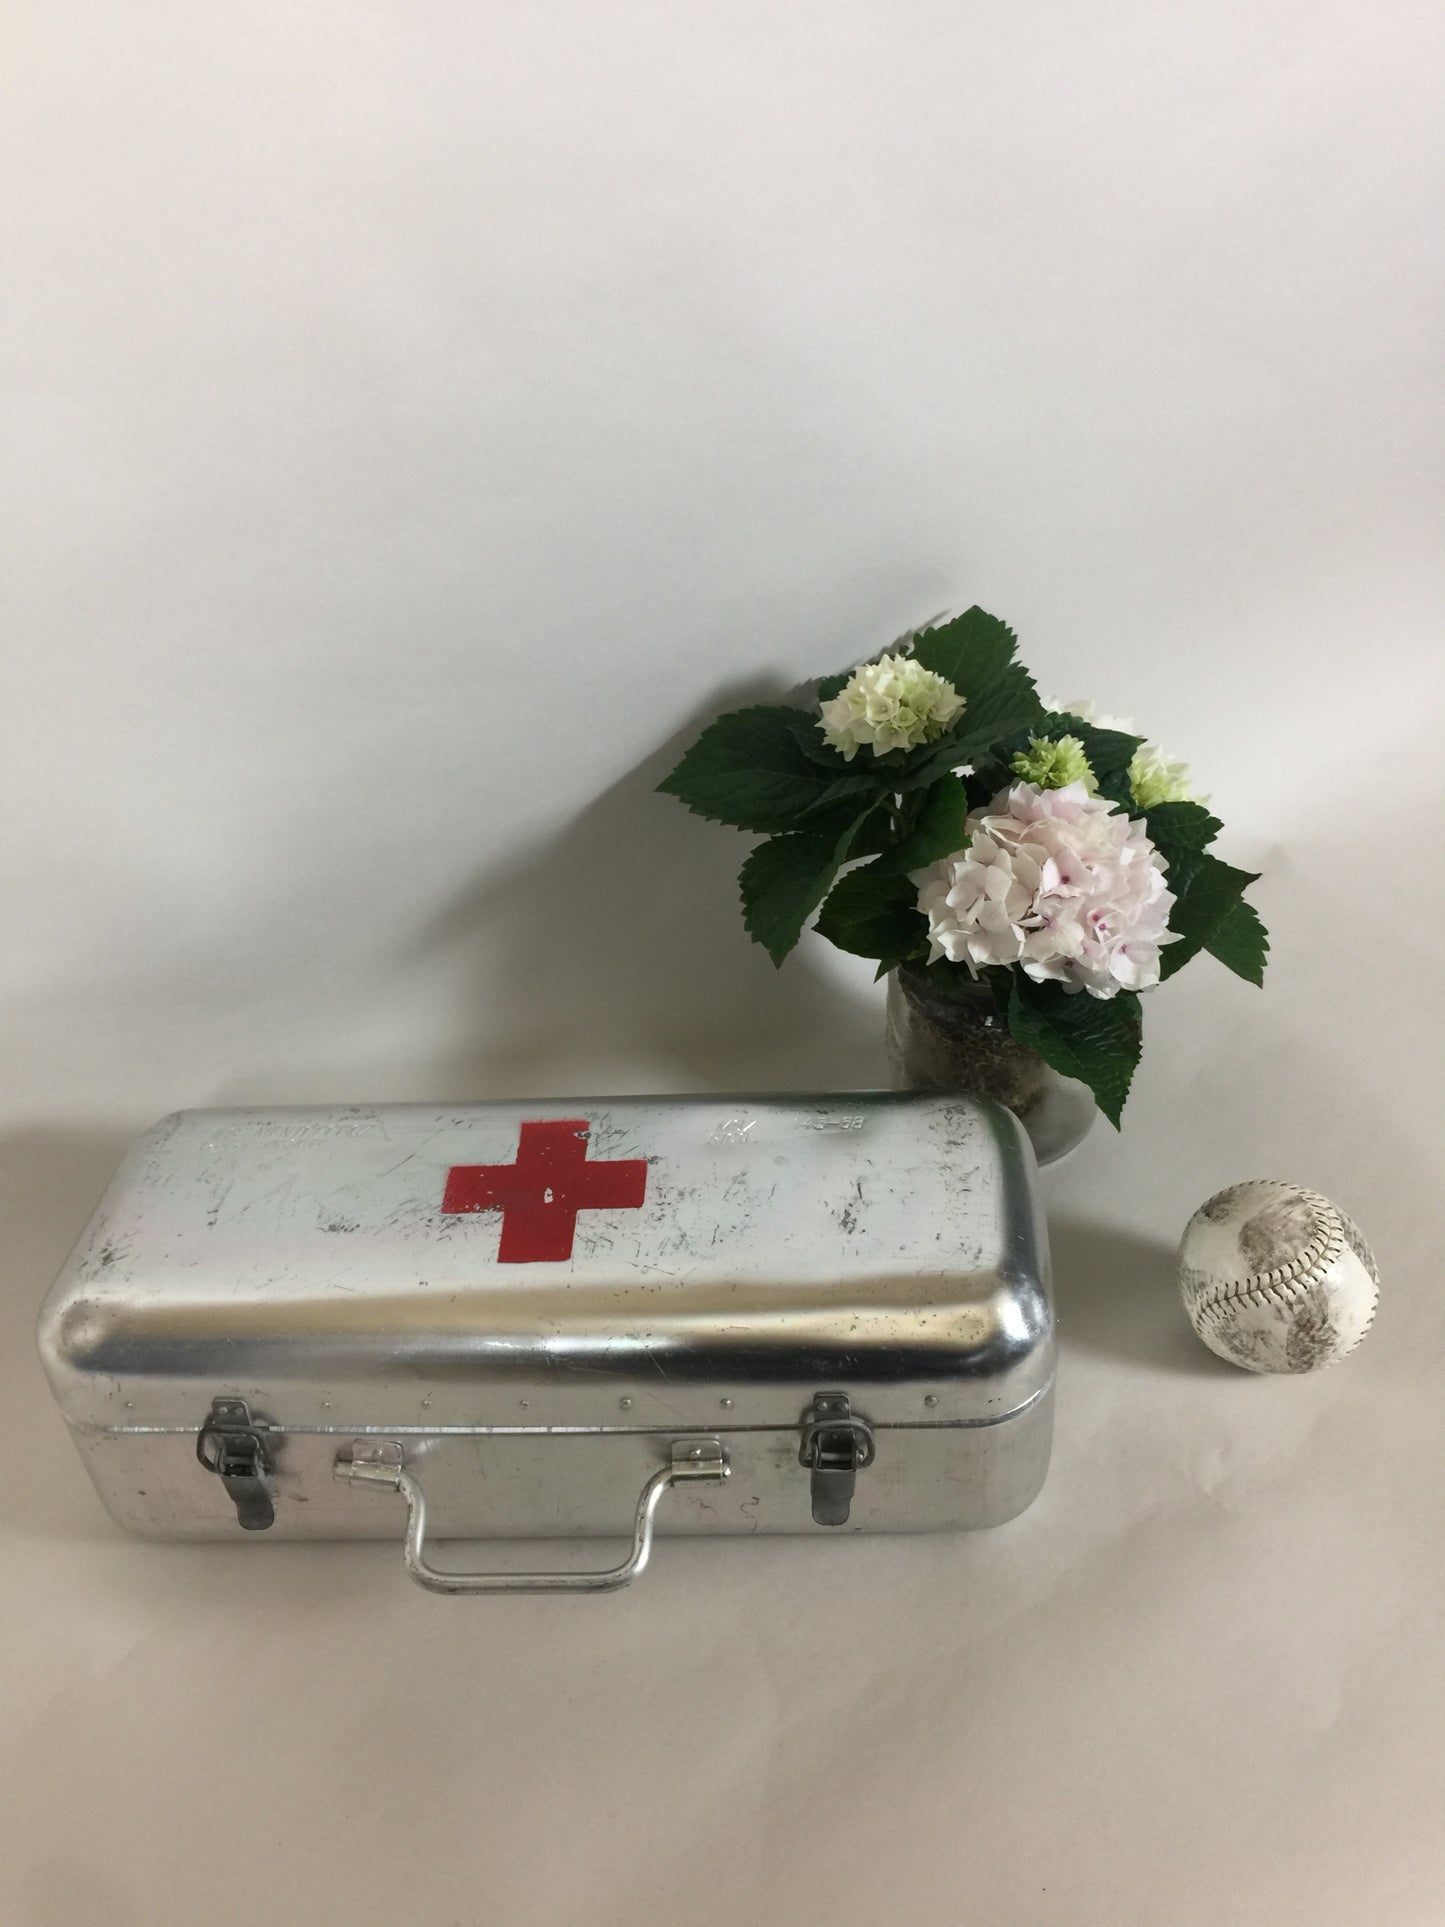 Fin og rå førstehjælpskasse fra Røde Kors